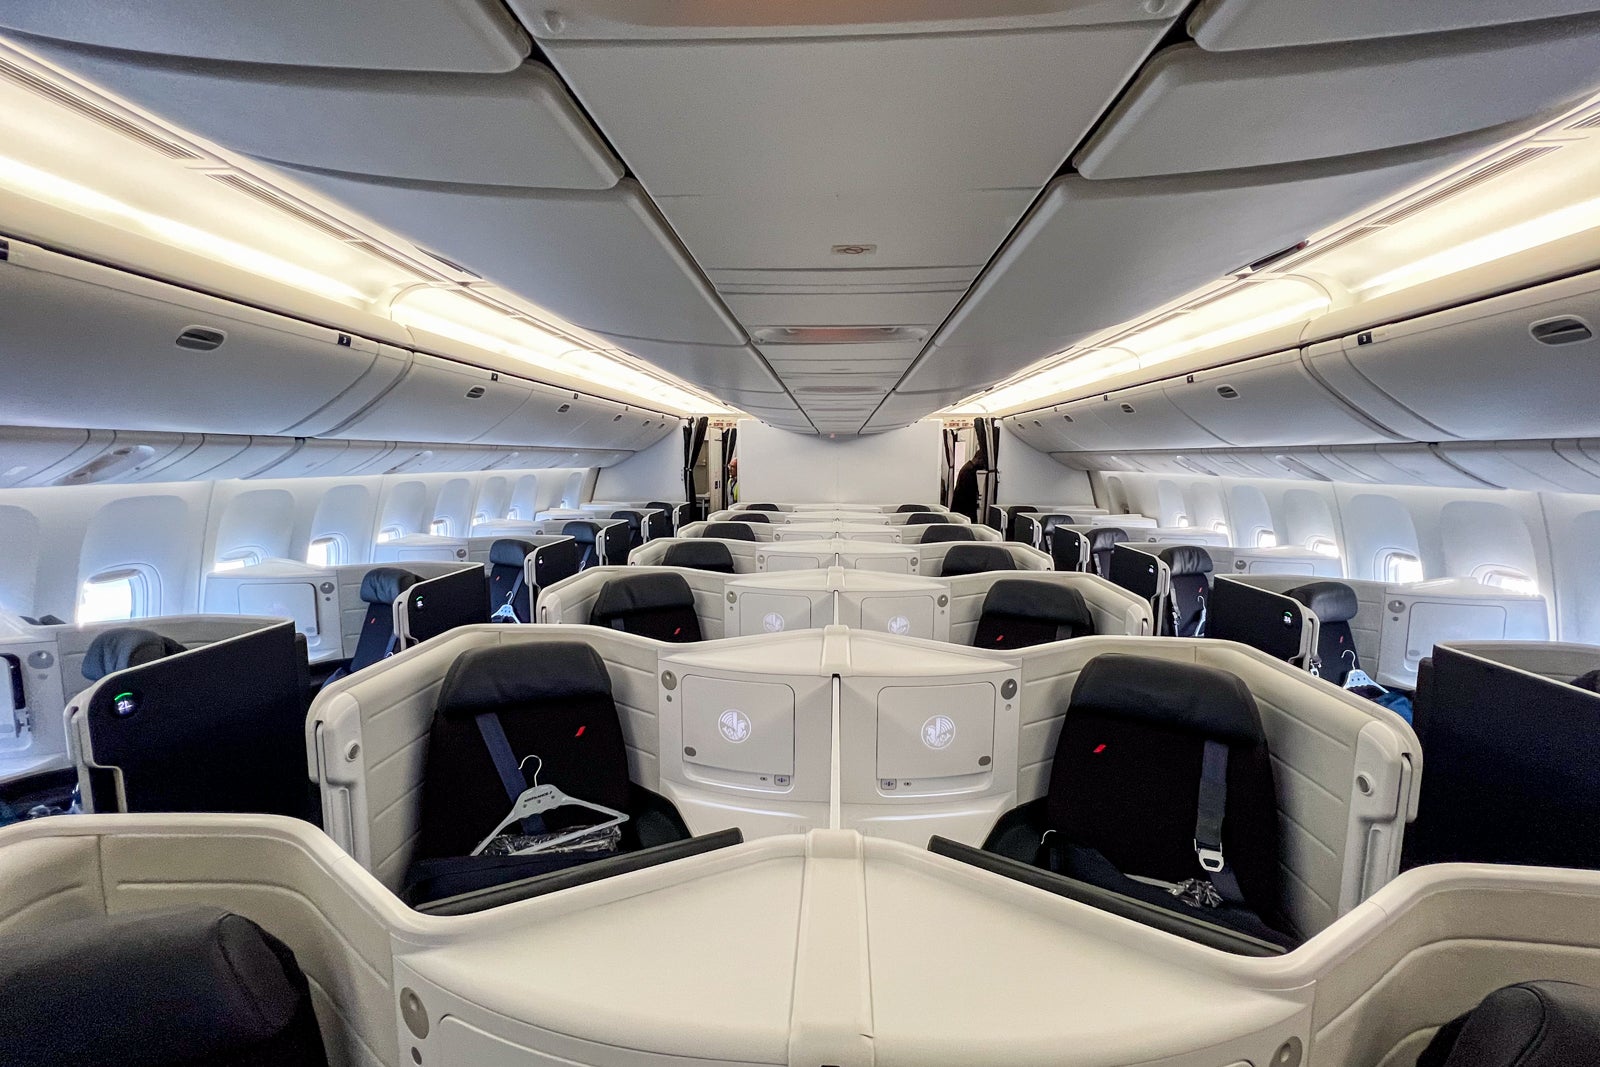 Air France Business Class Review - NerdWallet